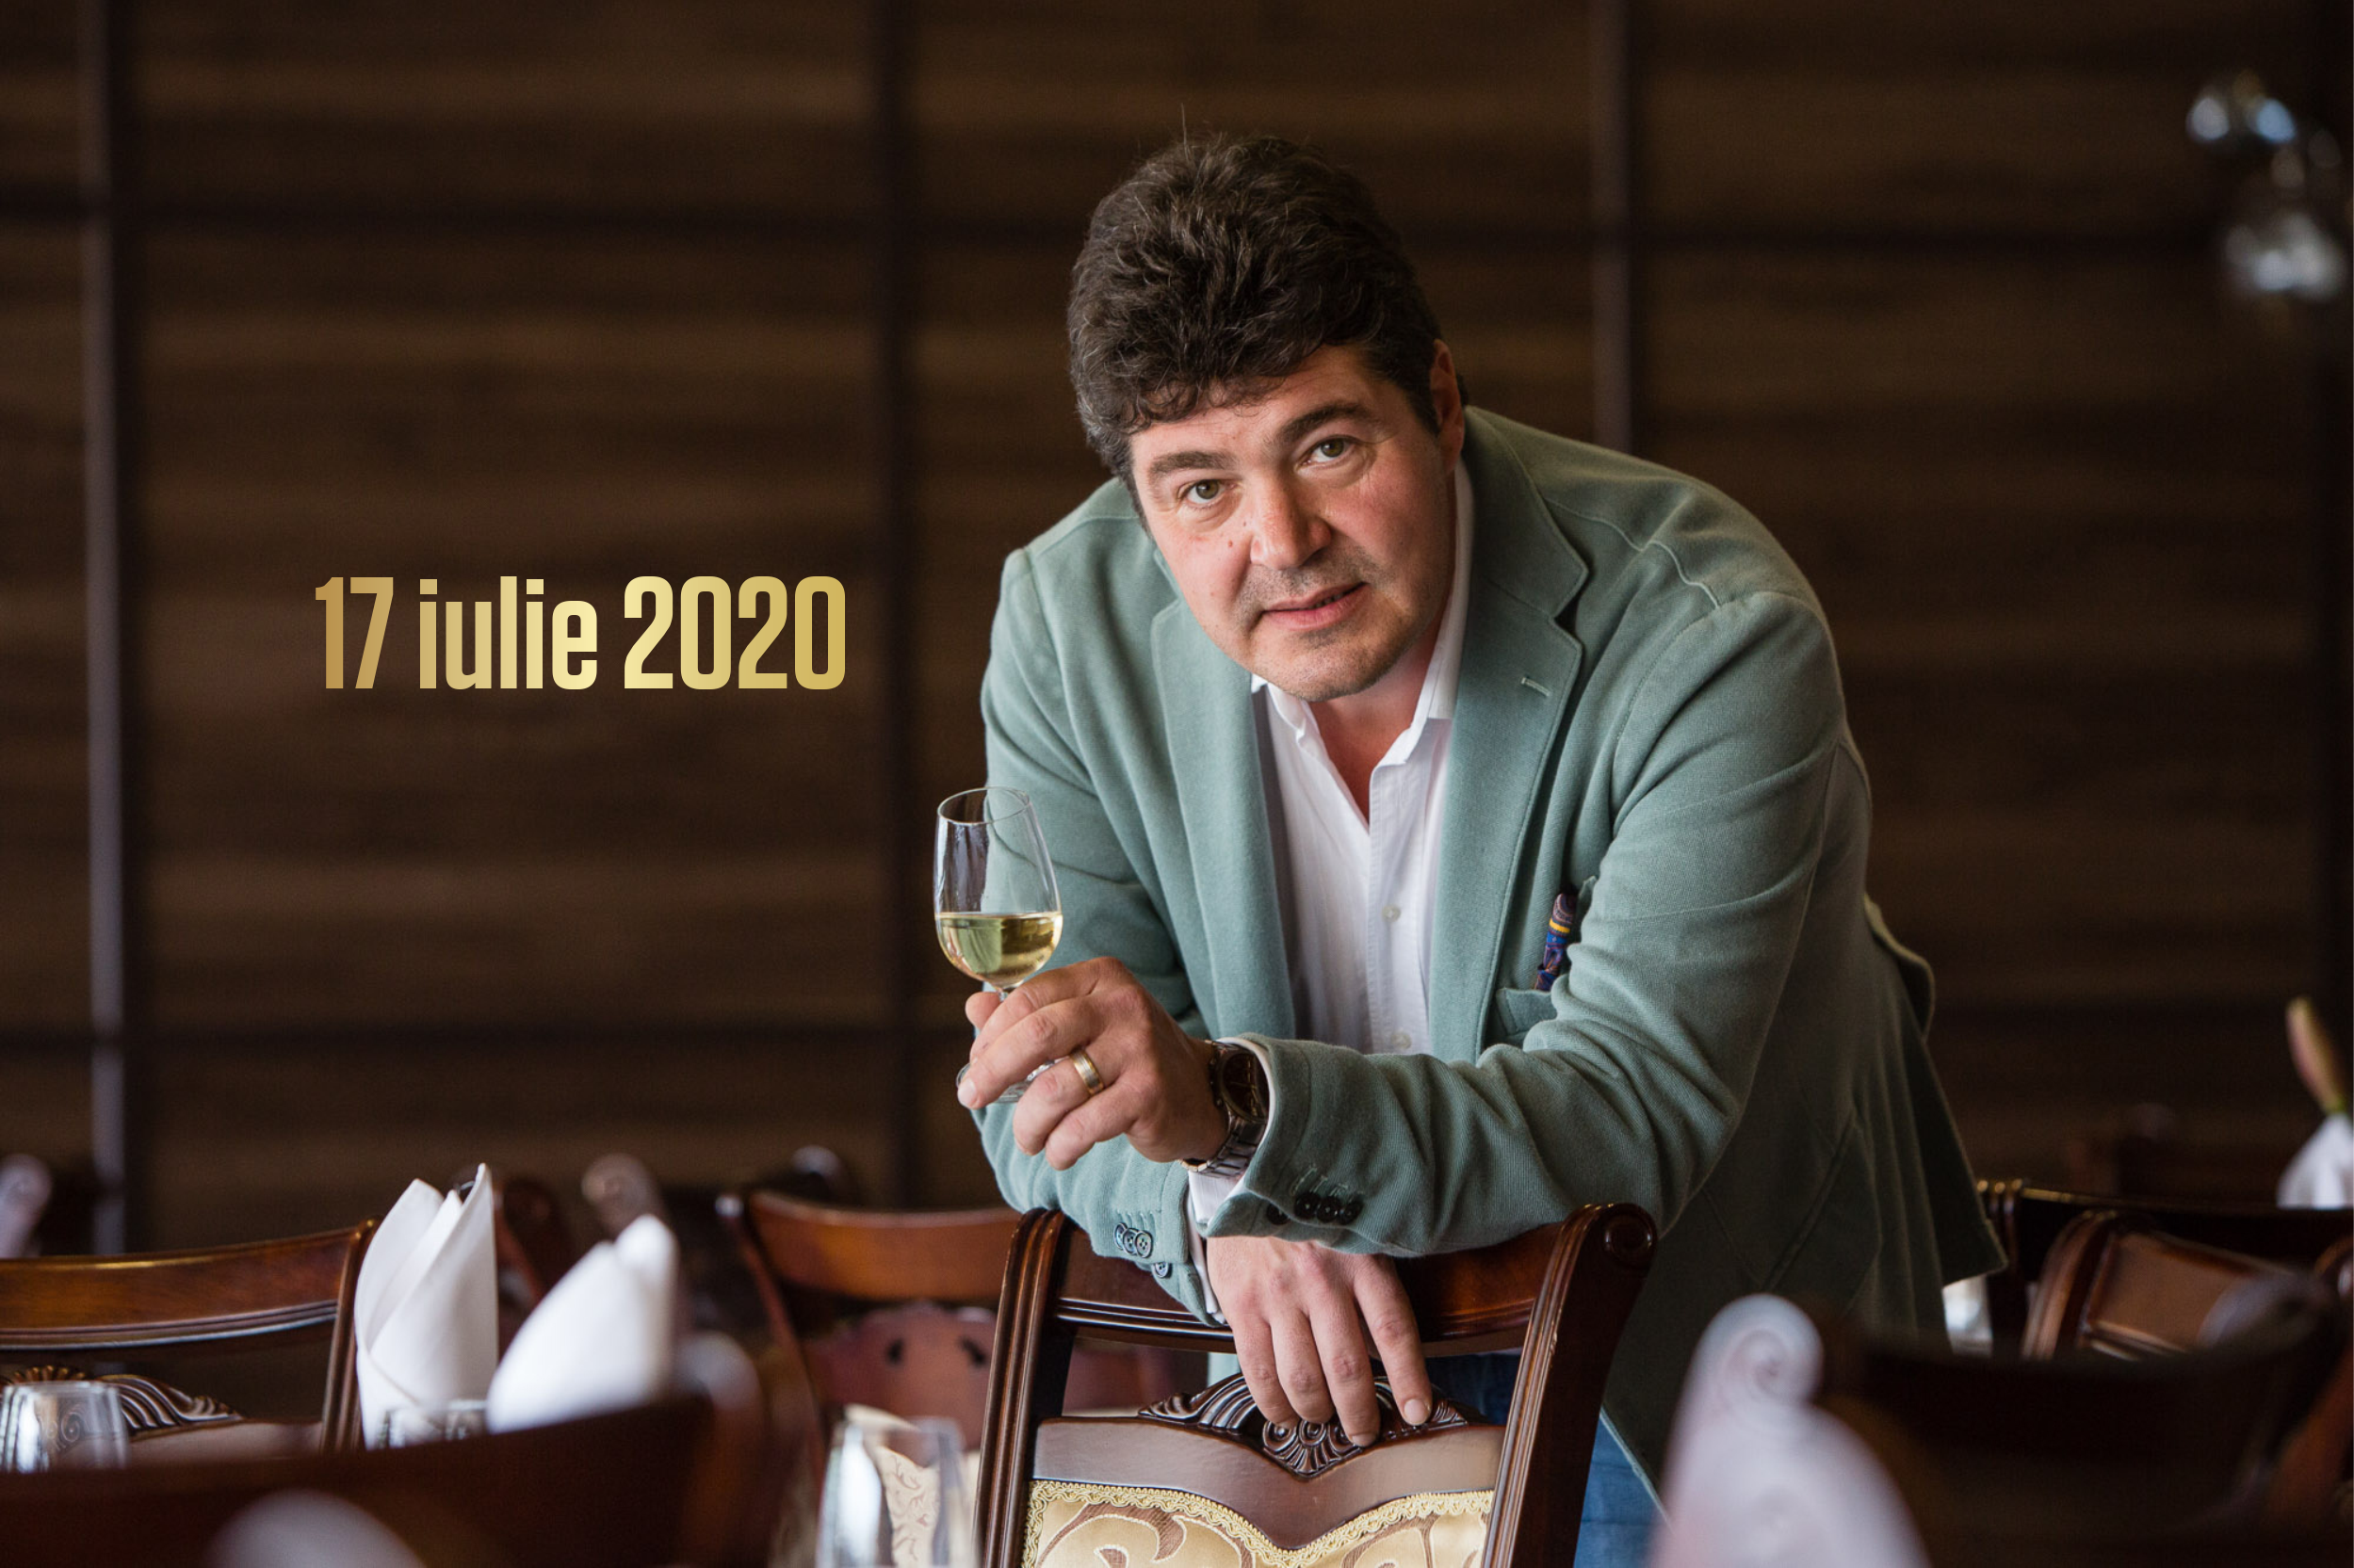 17 - 19 iulie 2020 – Ce vinuri bem în acest weekend, 3 vinuri pentru 3 seri. Recomandările lui Cătălin Păduraru, Preşedintele VINARIUM International Wine Contest